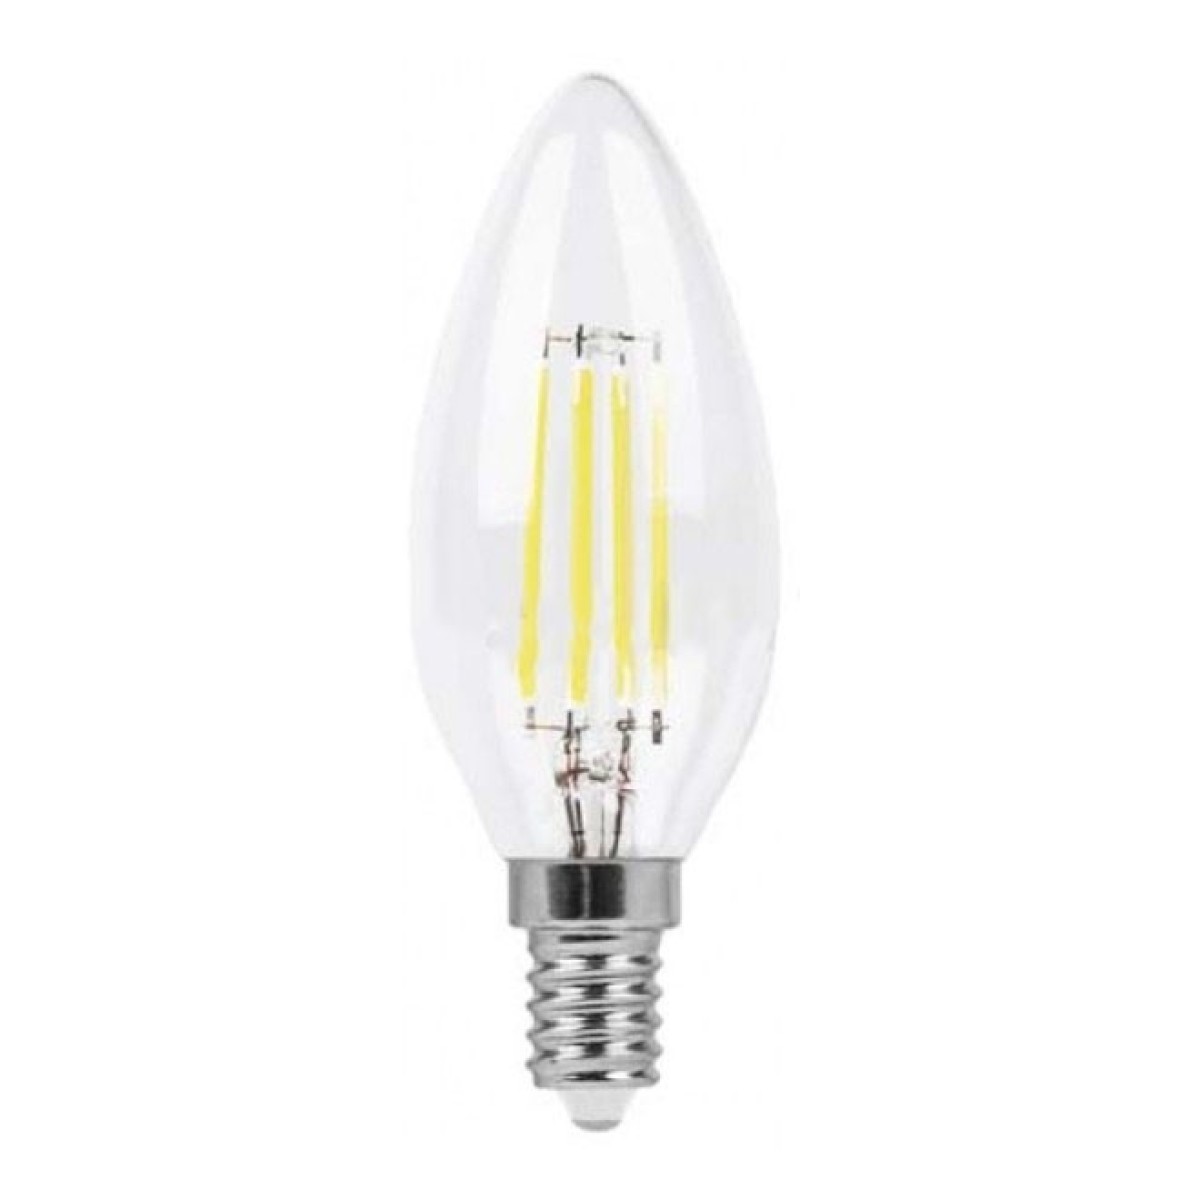 Світлодіодна лампа LB-158 C37 (свічка) філамент 6Вт 2700K E14, Feron 256_256.jpg